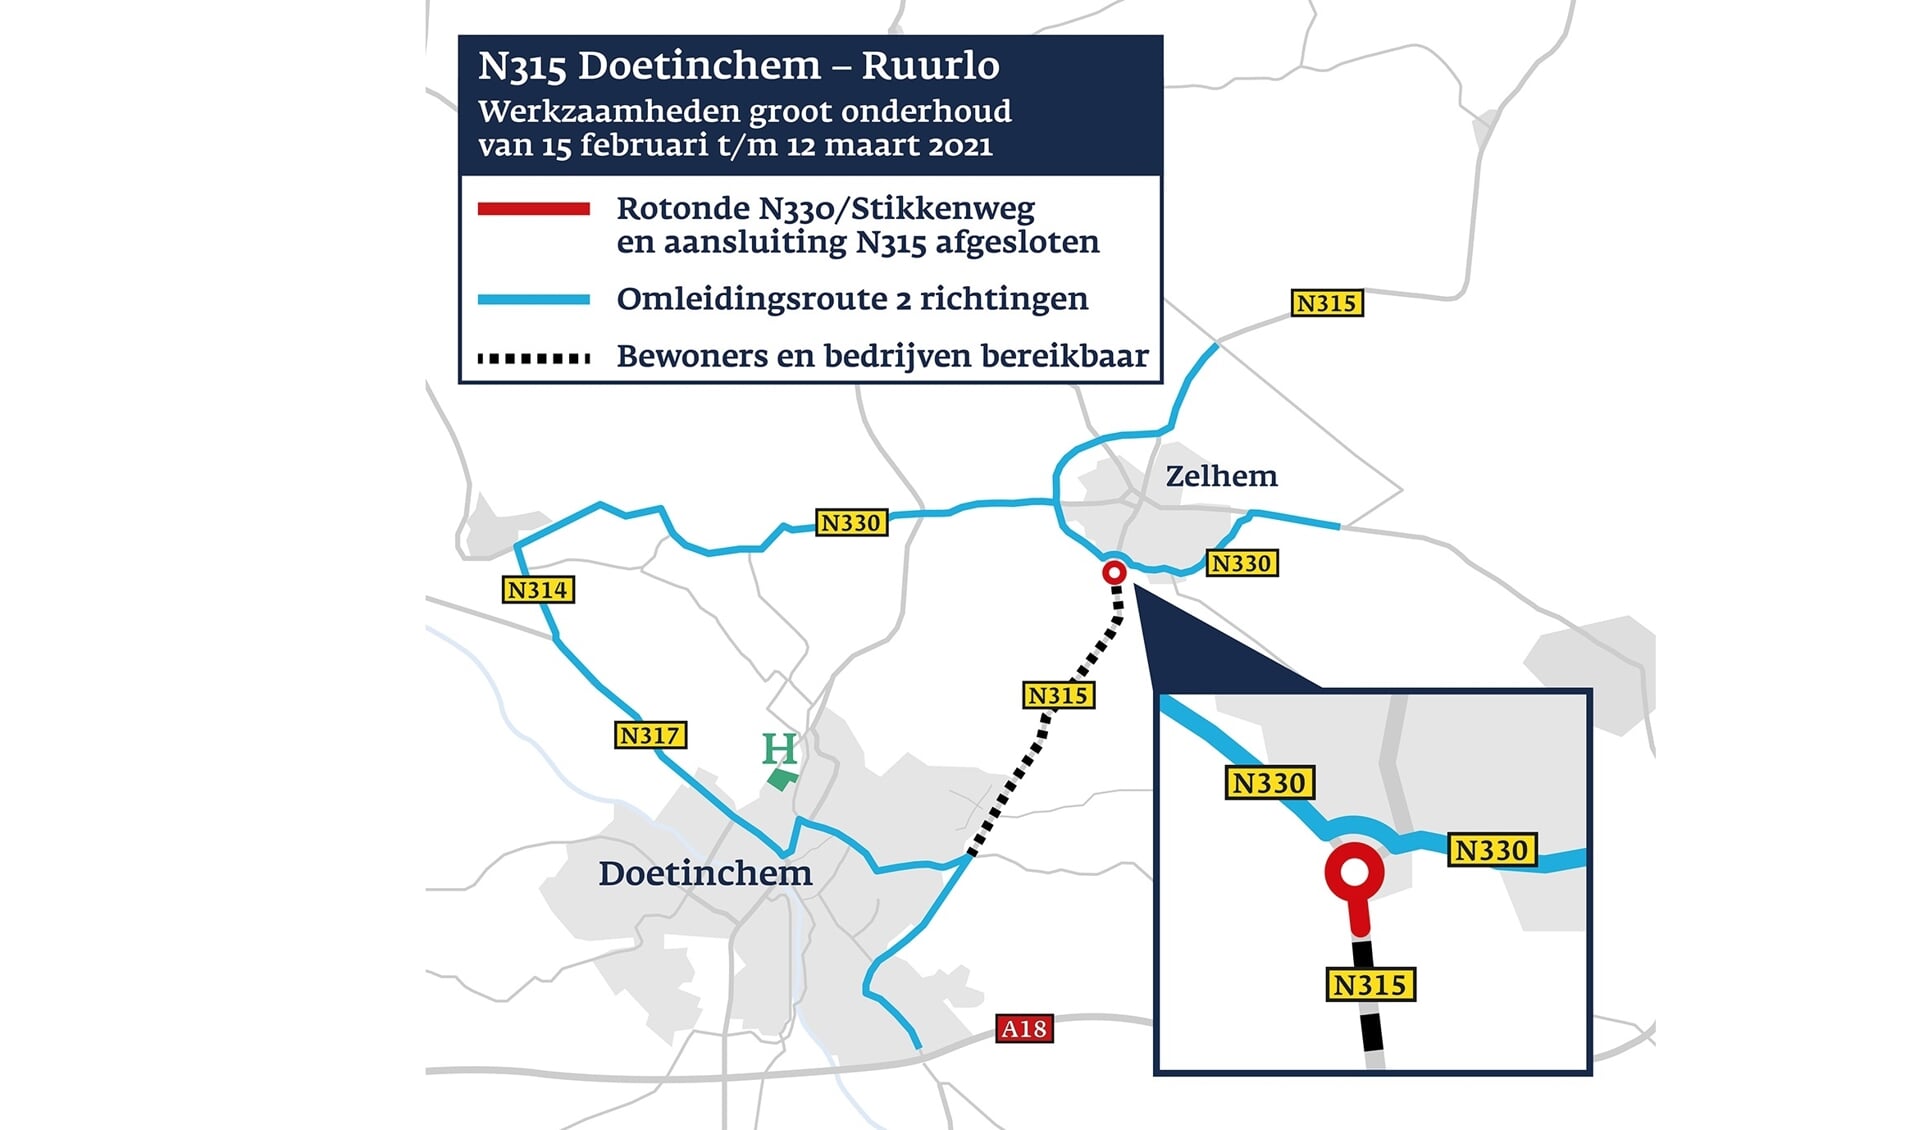 Omleidingsroute voor werkzaamheden aan de N315 Doetinchem-Ruurlo. Beeld: Provincie Gelderland